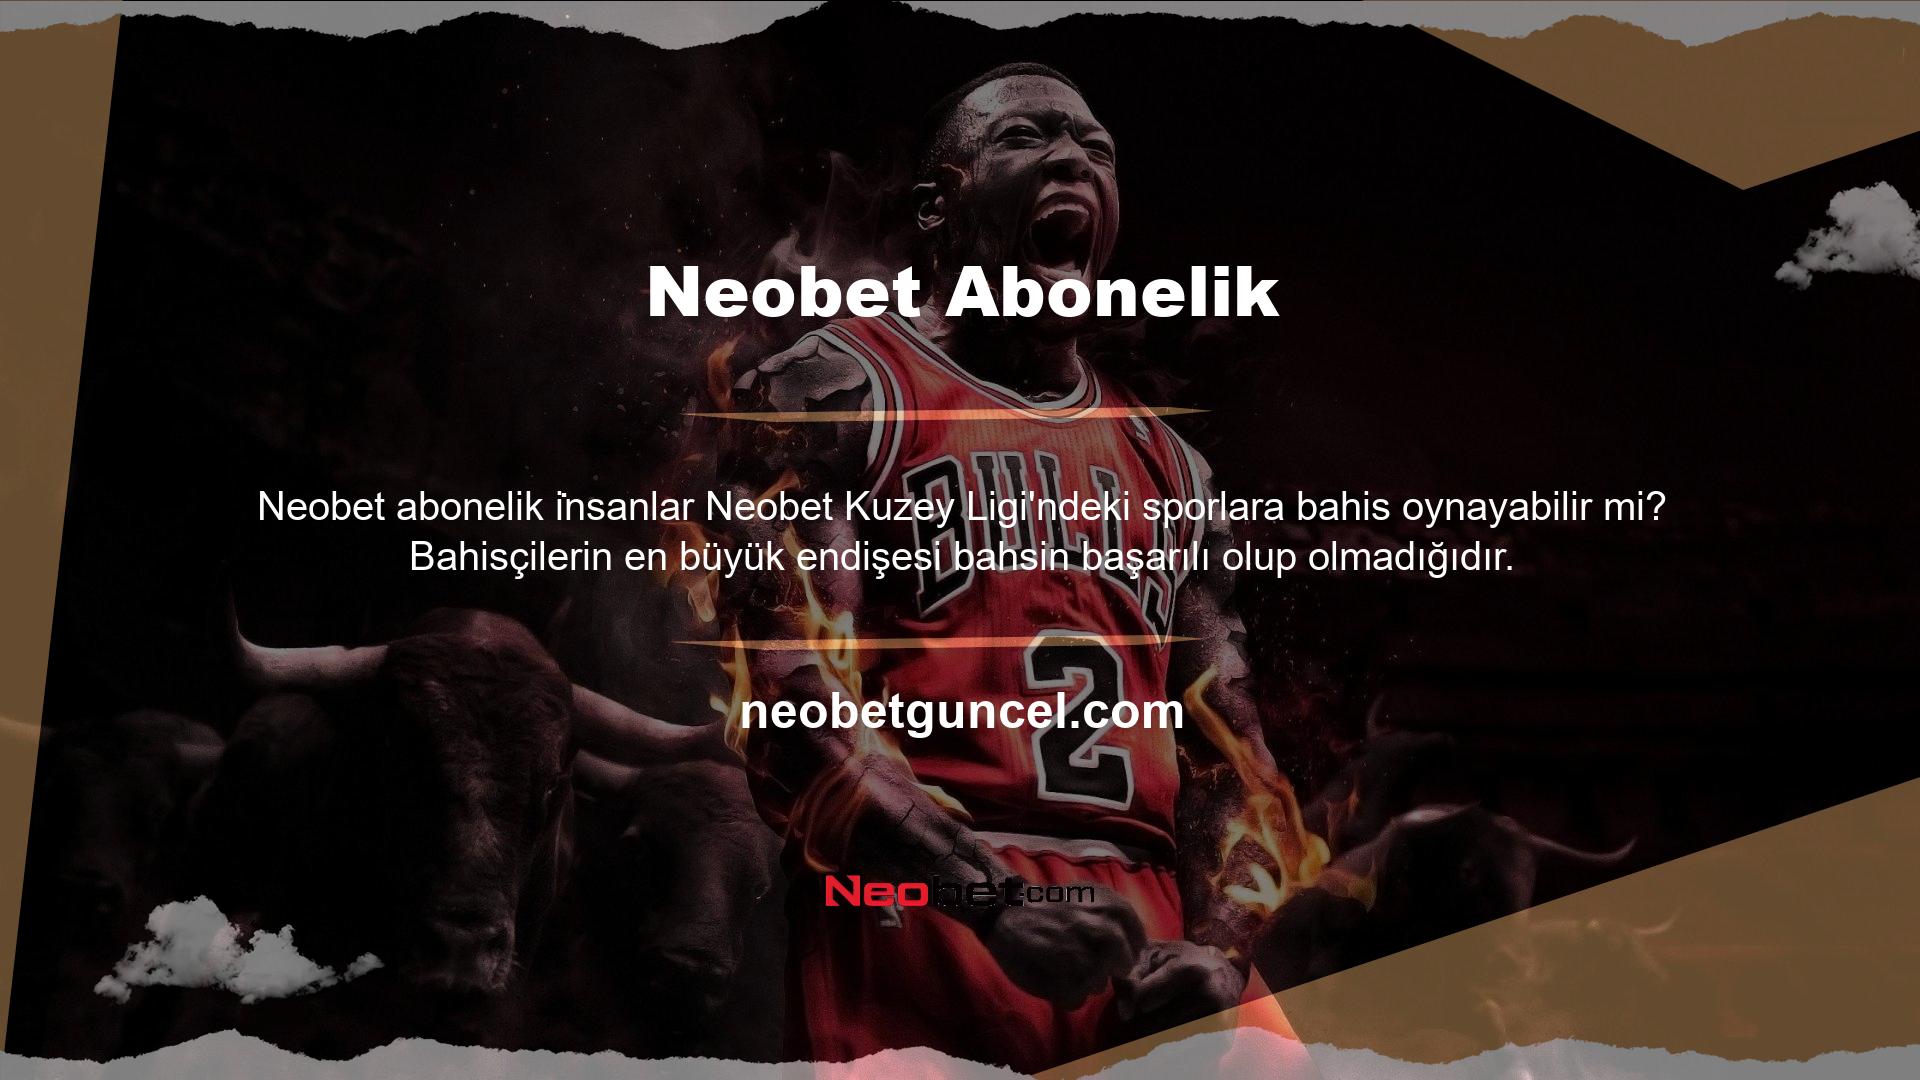 Neobet web sitesinin İskandinavya spreadleri bu özel durumda kazançlı bir fırsattır